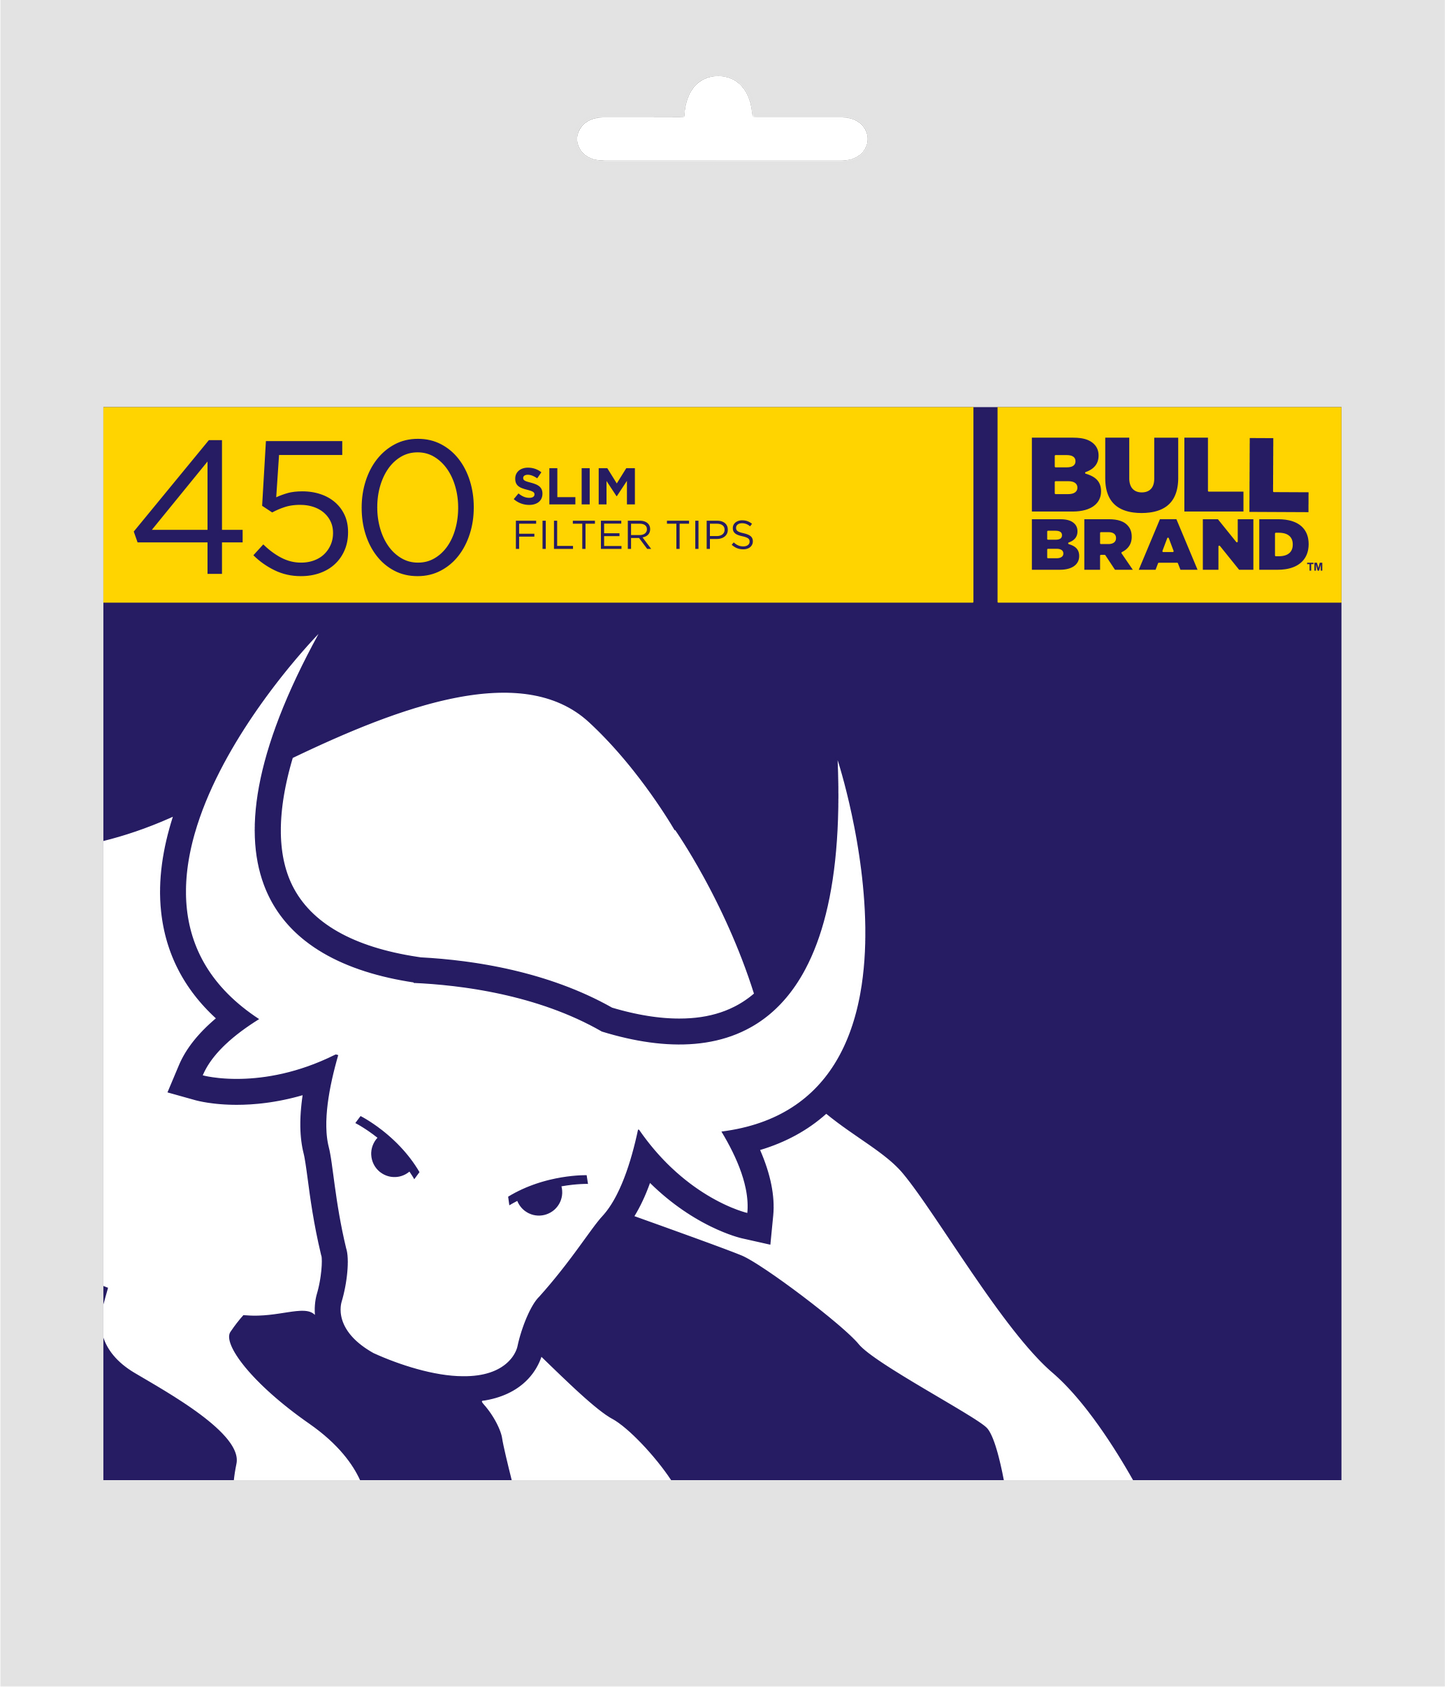 Bull Brand Slim Filter Tips Bags 450s